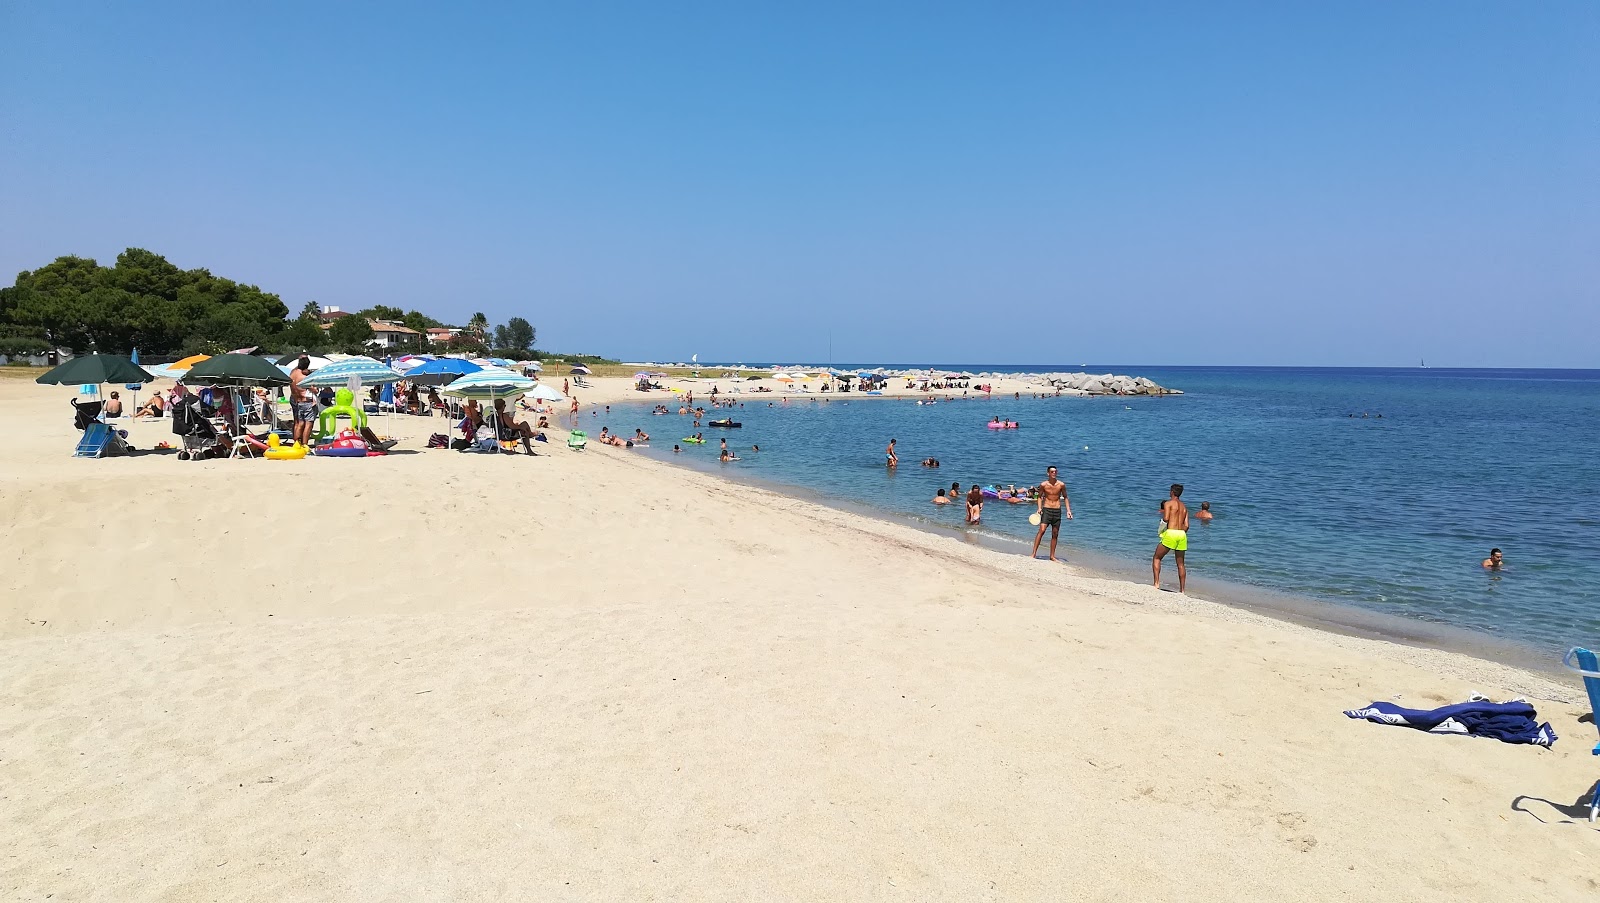 Spiaggia di Bivona'in fotoğrafı parlak kum yüzey ile